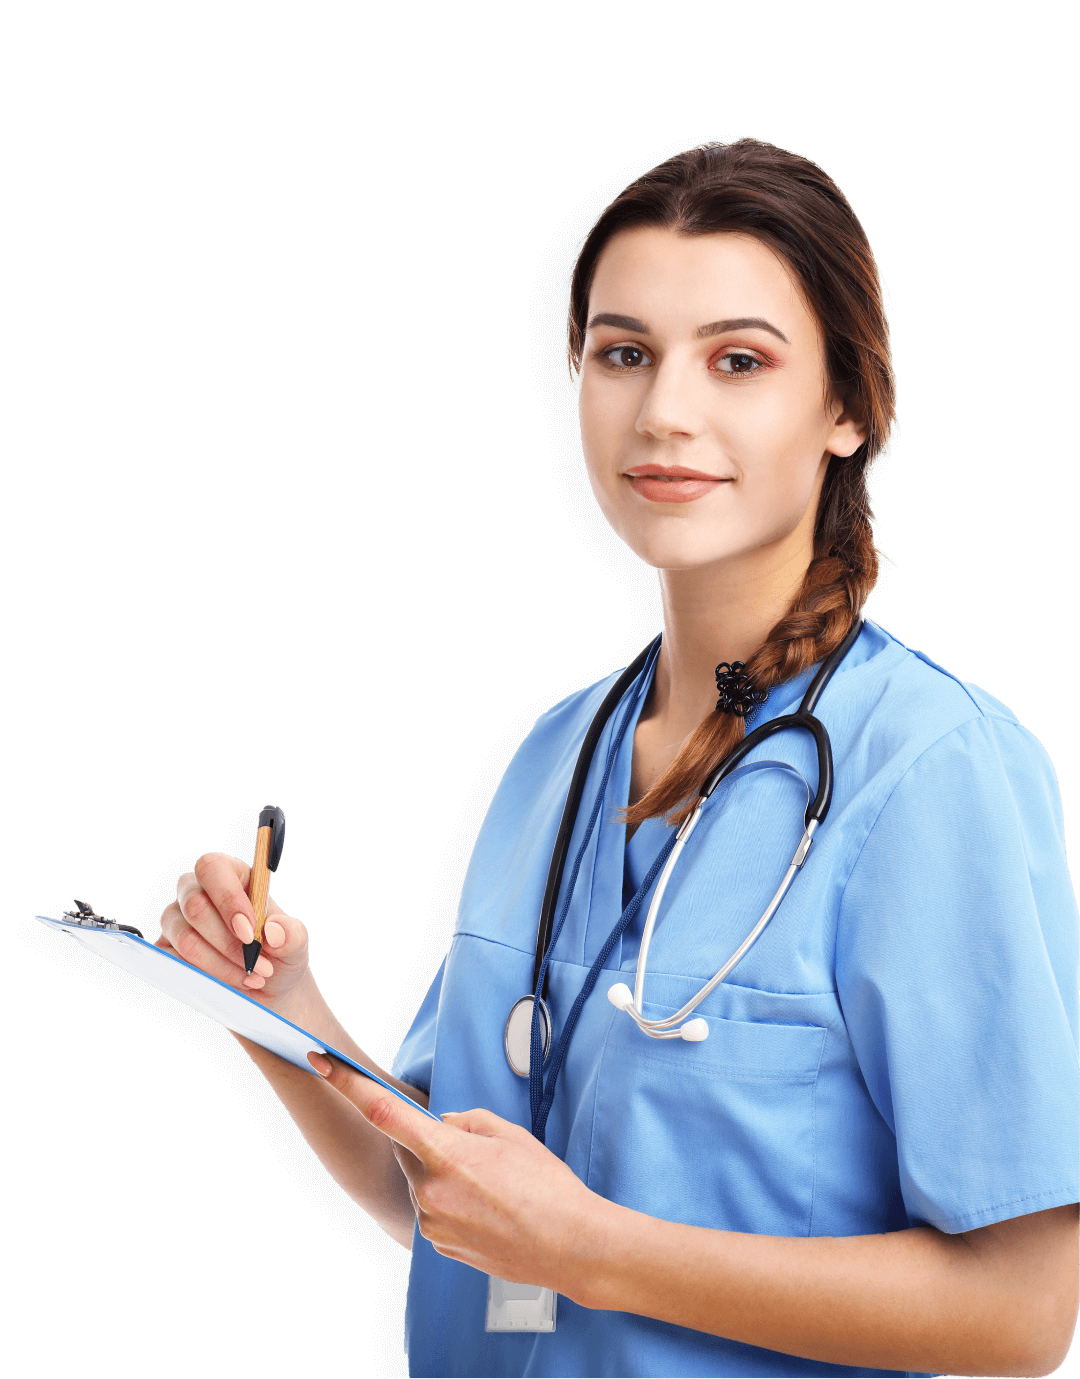 Nurse-Certified Nurse Educator professional